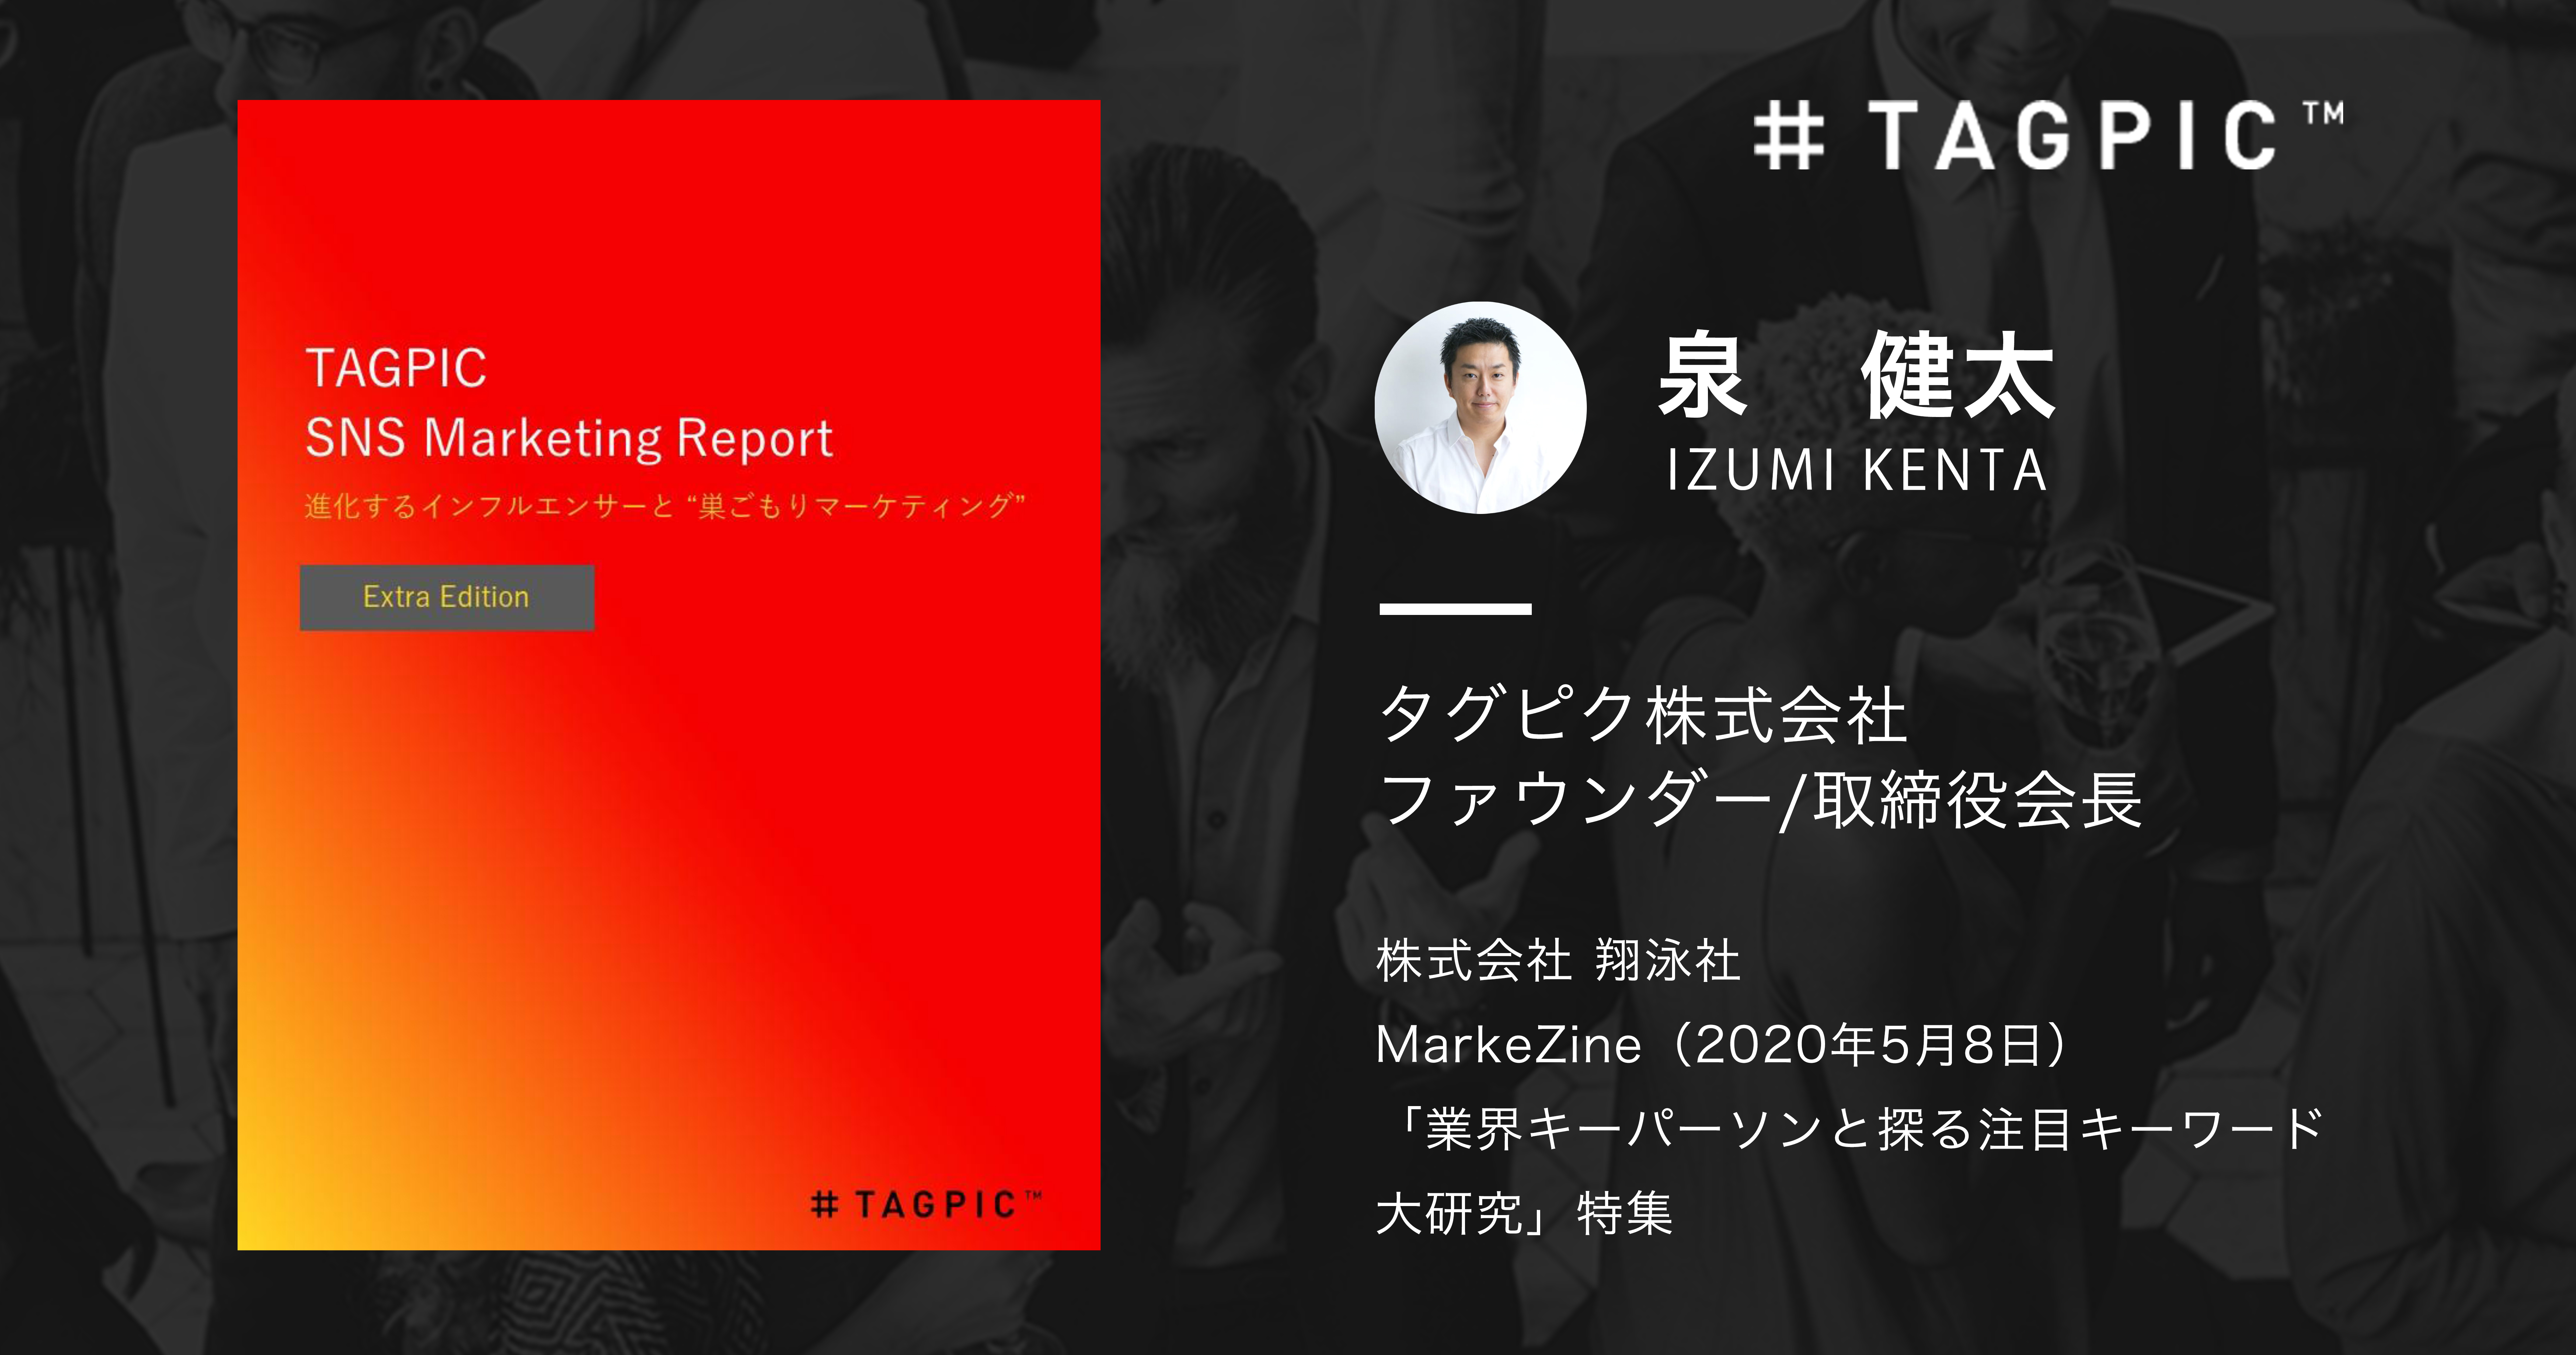 タグピク ファウンダー兼取締役会長の泉健太が Markezine マーケジン に掲載 タグピク株式会社のプレスリリース